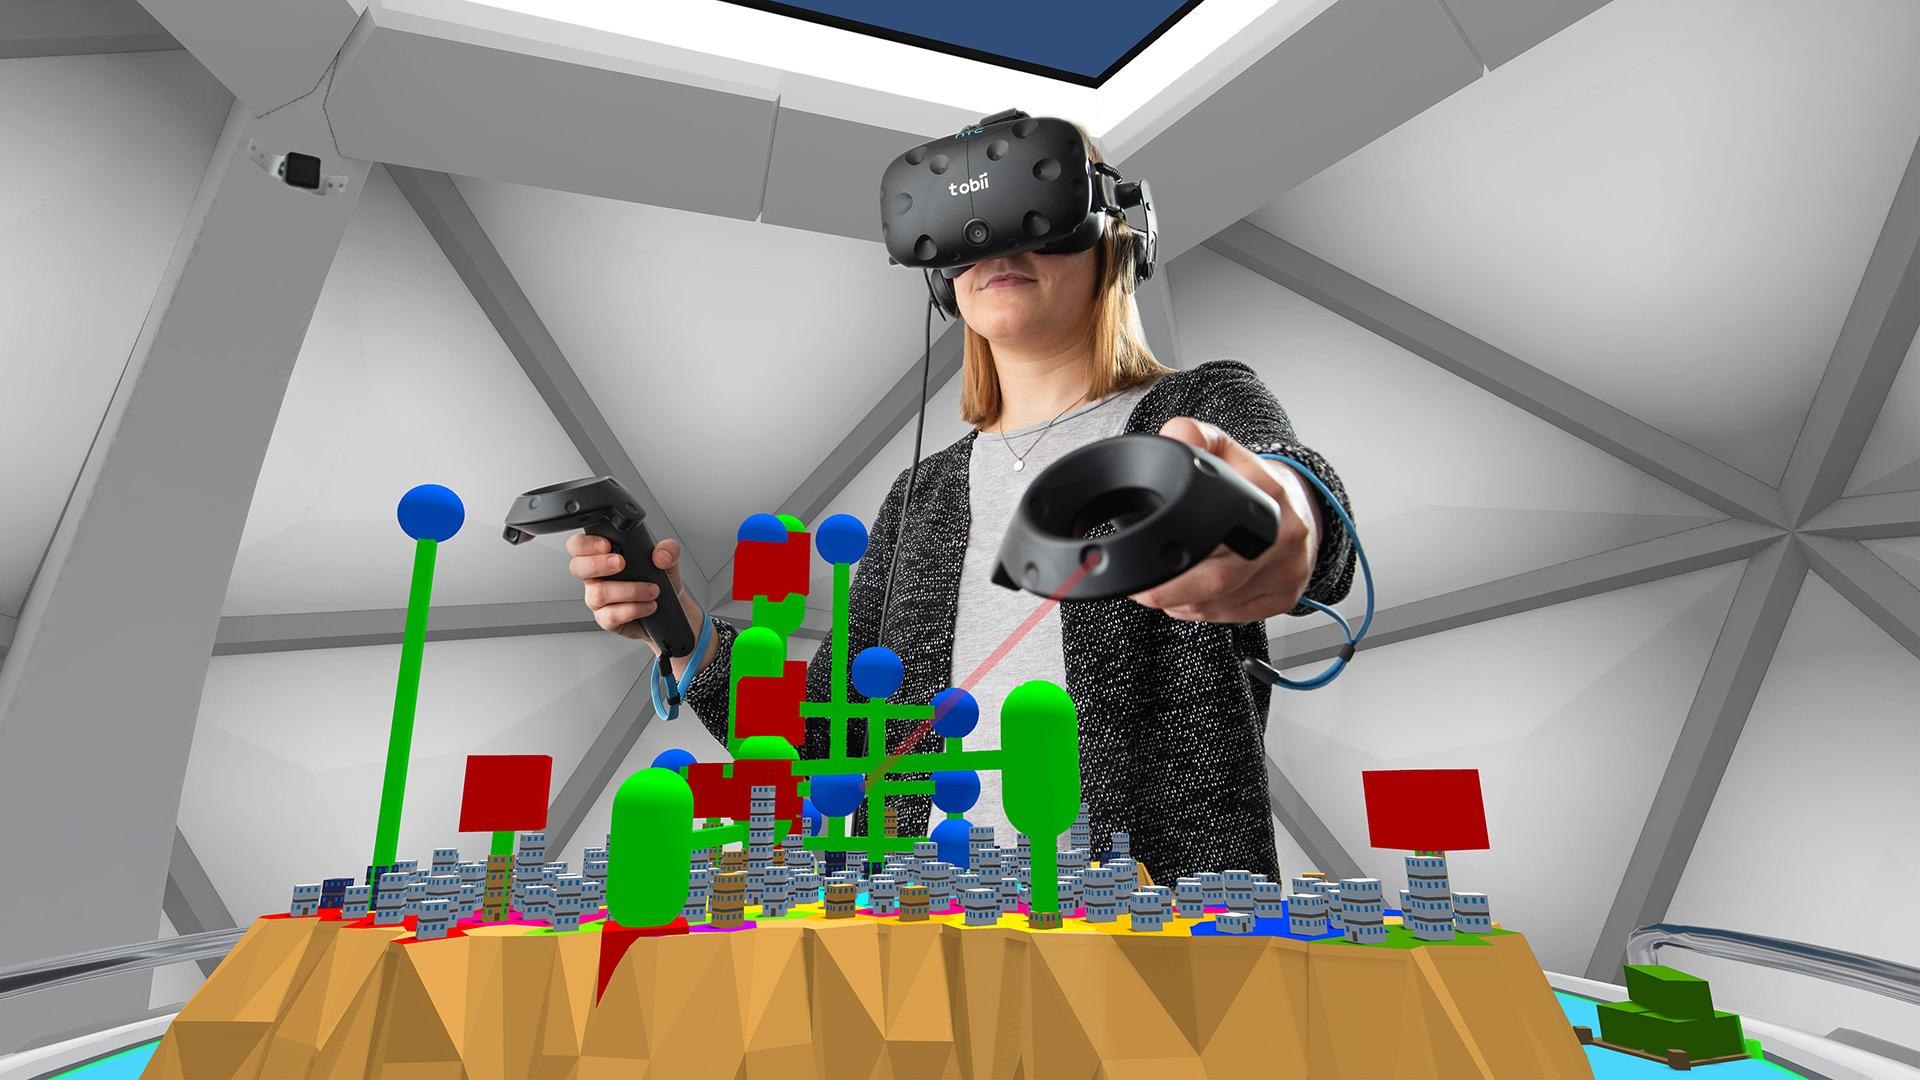 Softwarevisualisierung "IslandViz" in einer Virtual Reality Umgebung